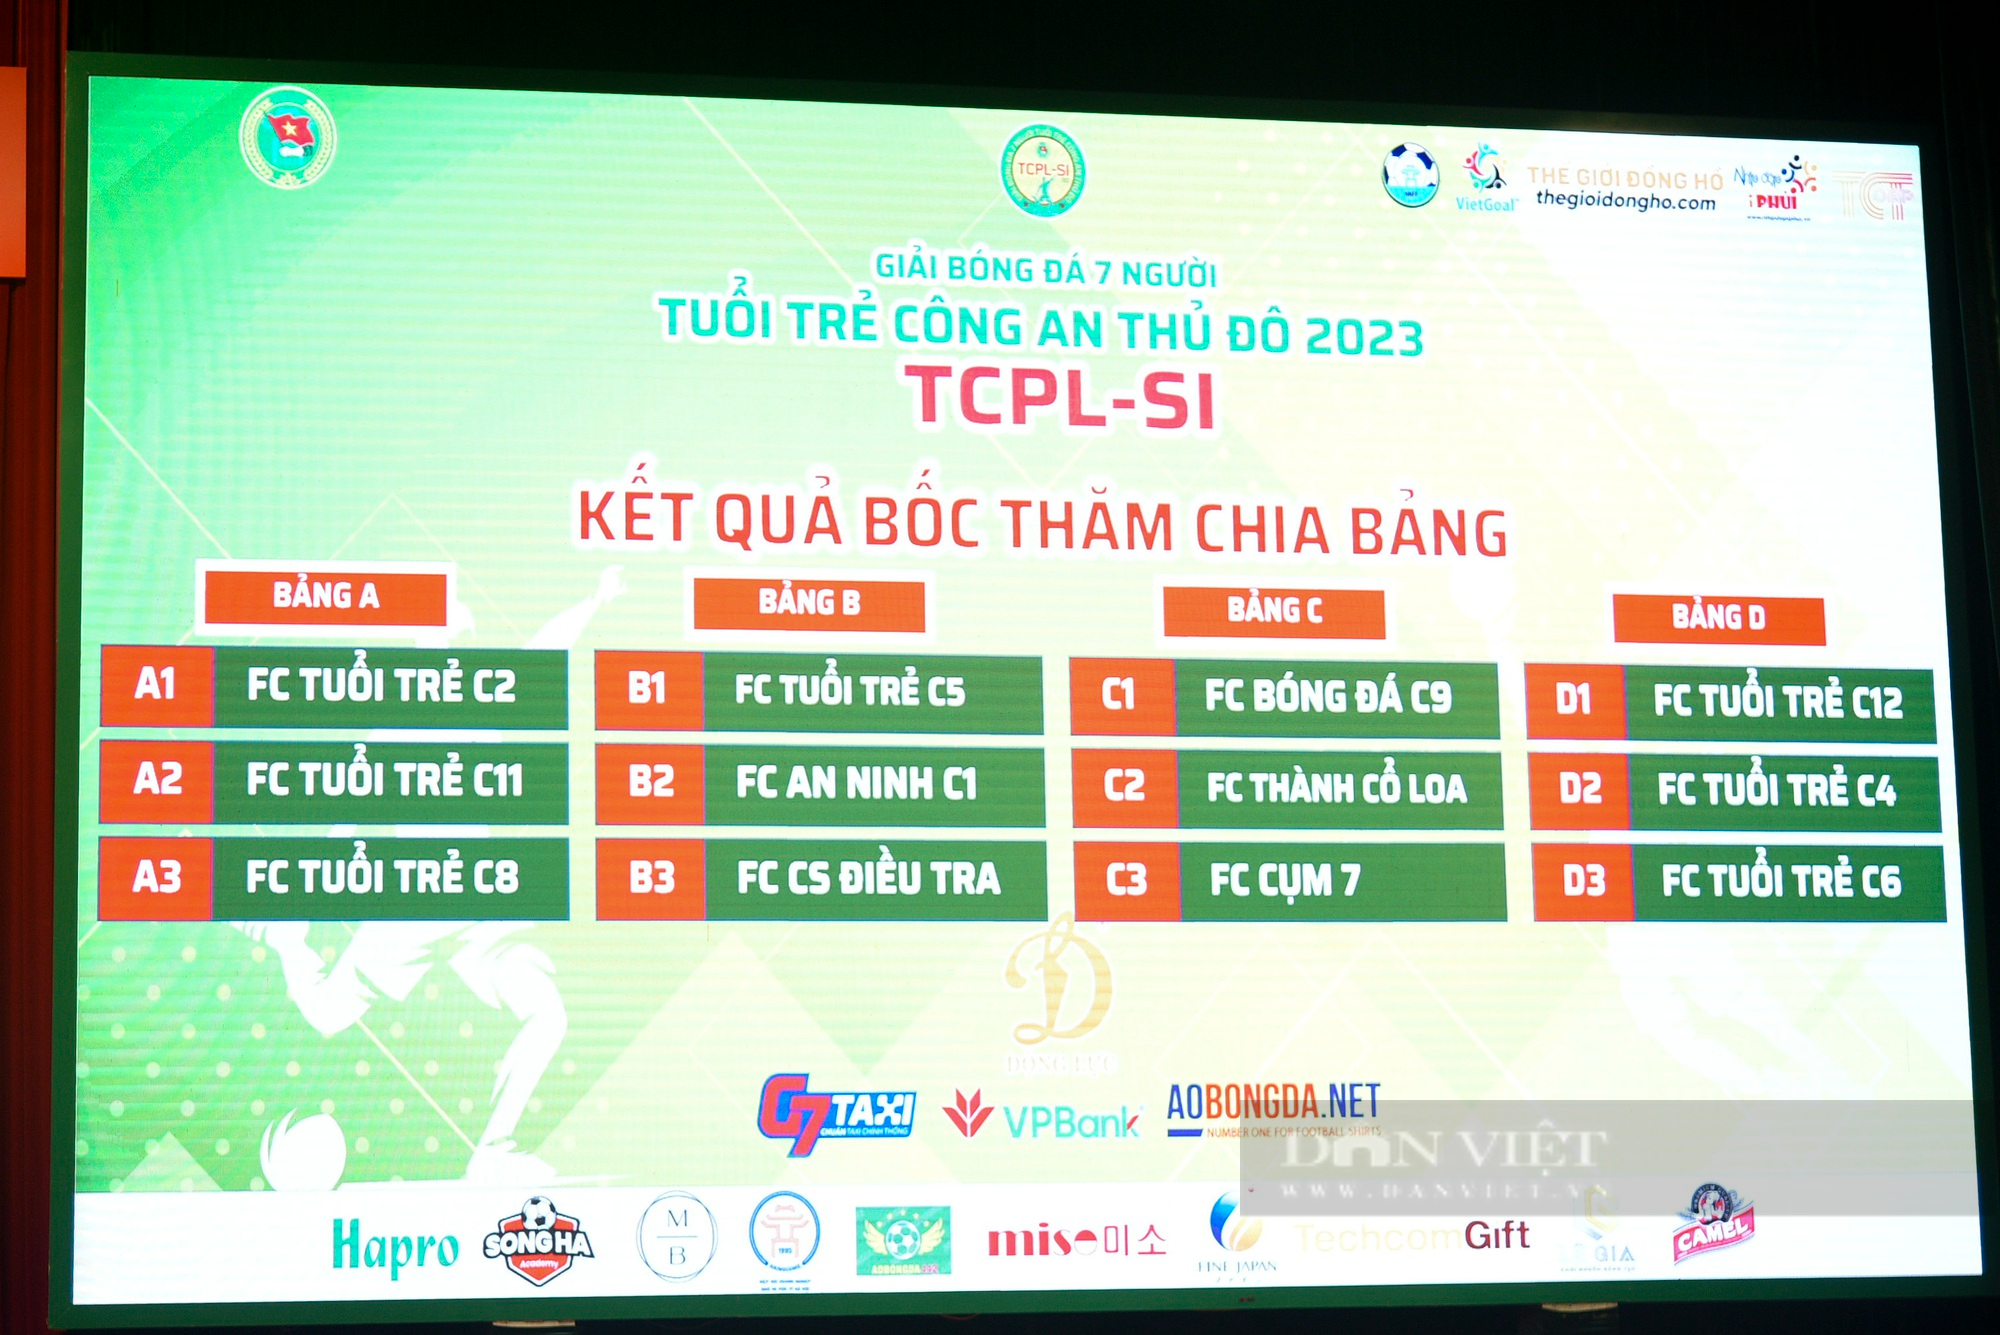 Lễ ra mắt và bốc thăm chia bảng giải bóng đá 7 người tuổi trẻ công an Thủ đô năm 2023 - Ảnh 3.